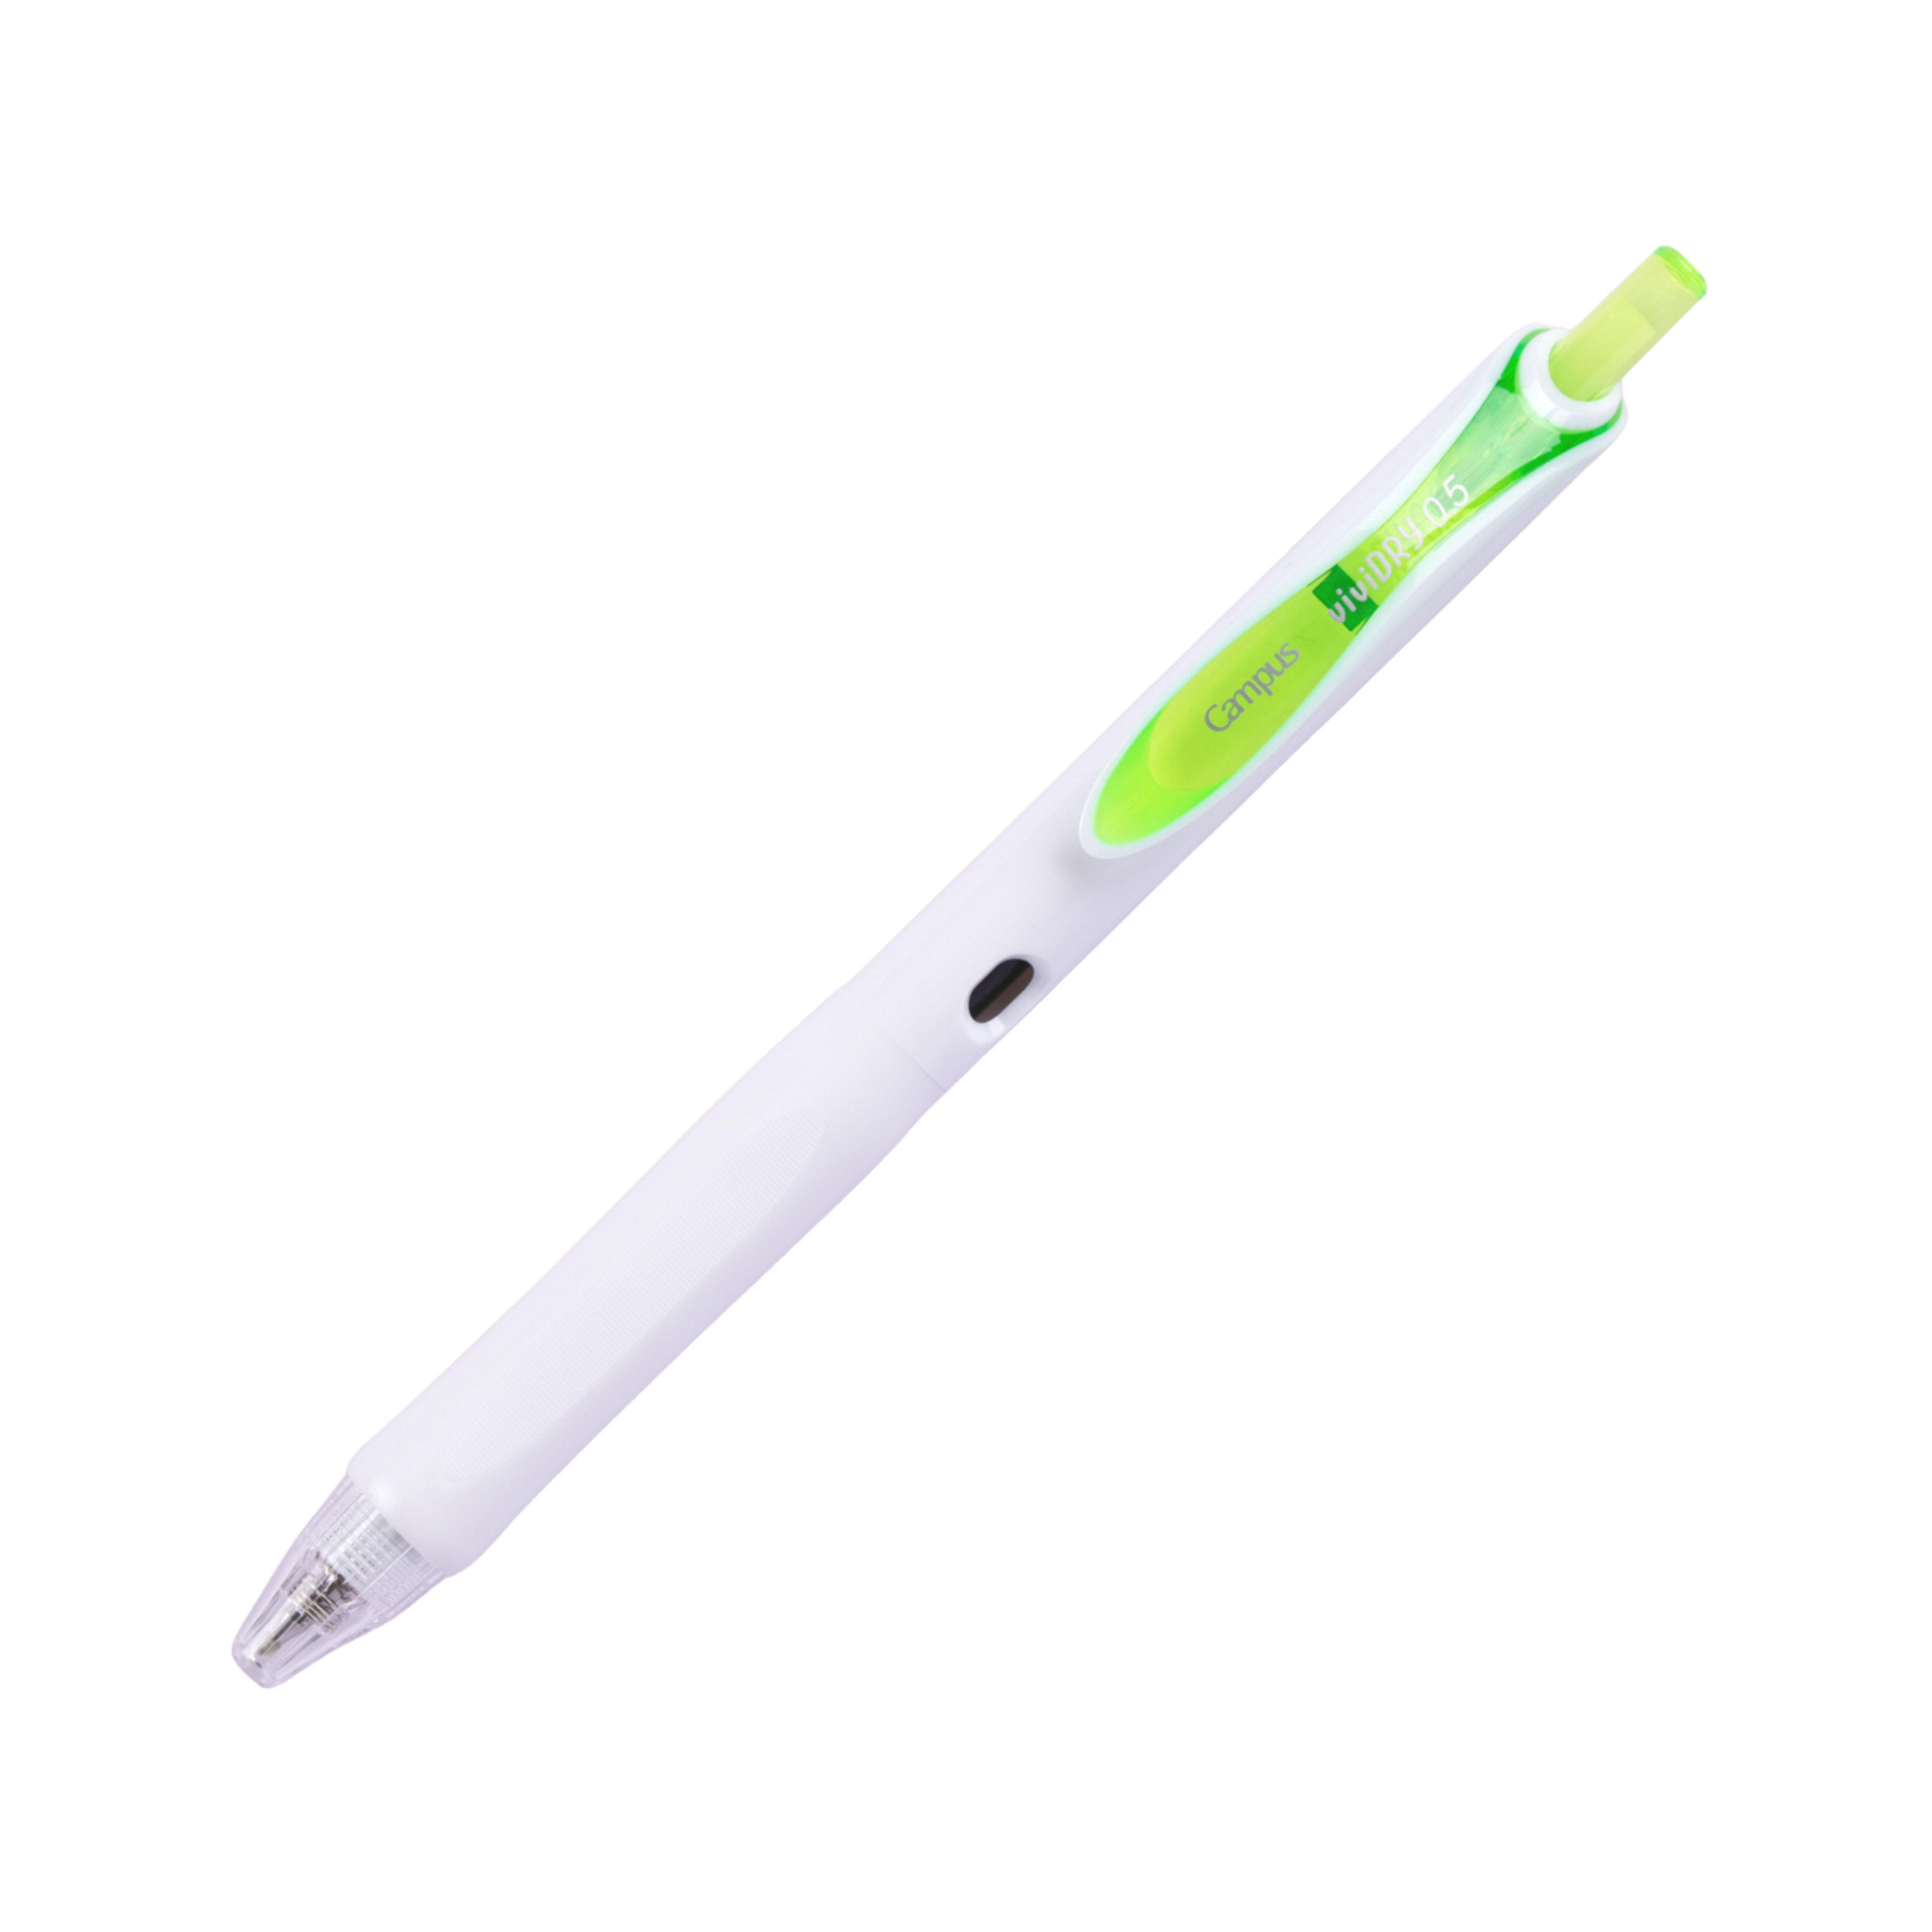 Kokuyo Campus viviDRY Retractable Gel Pen - 0.5 mm - Light Green